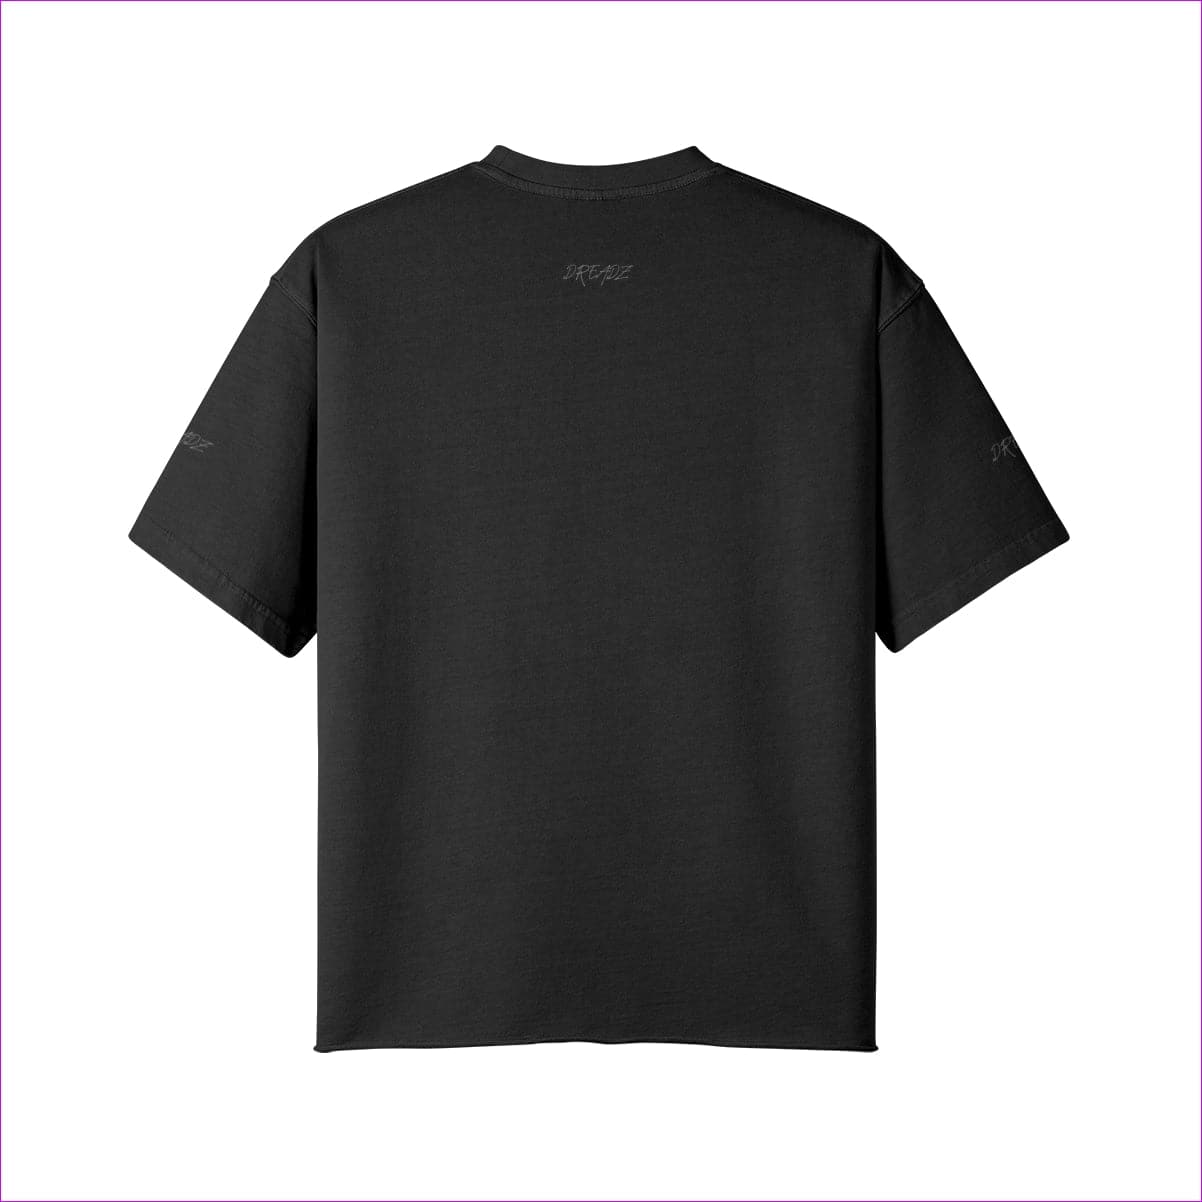 - Naughty Dreadz Washed Raw Edge T-shirt - 8 colors - mens t-shirt at TFC&H Co.